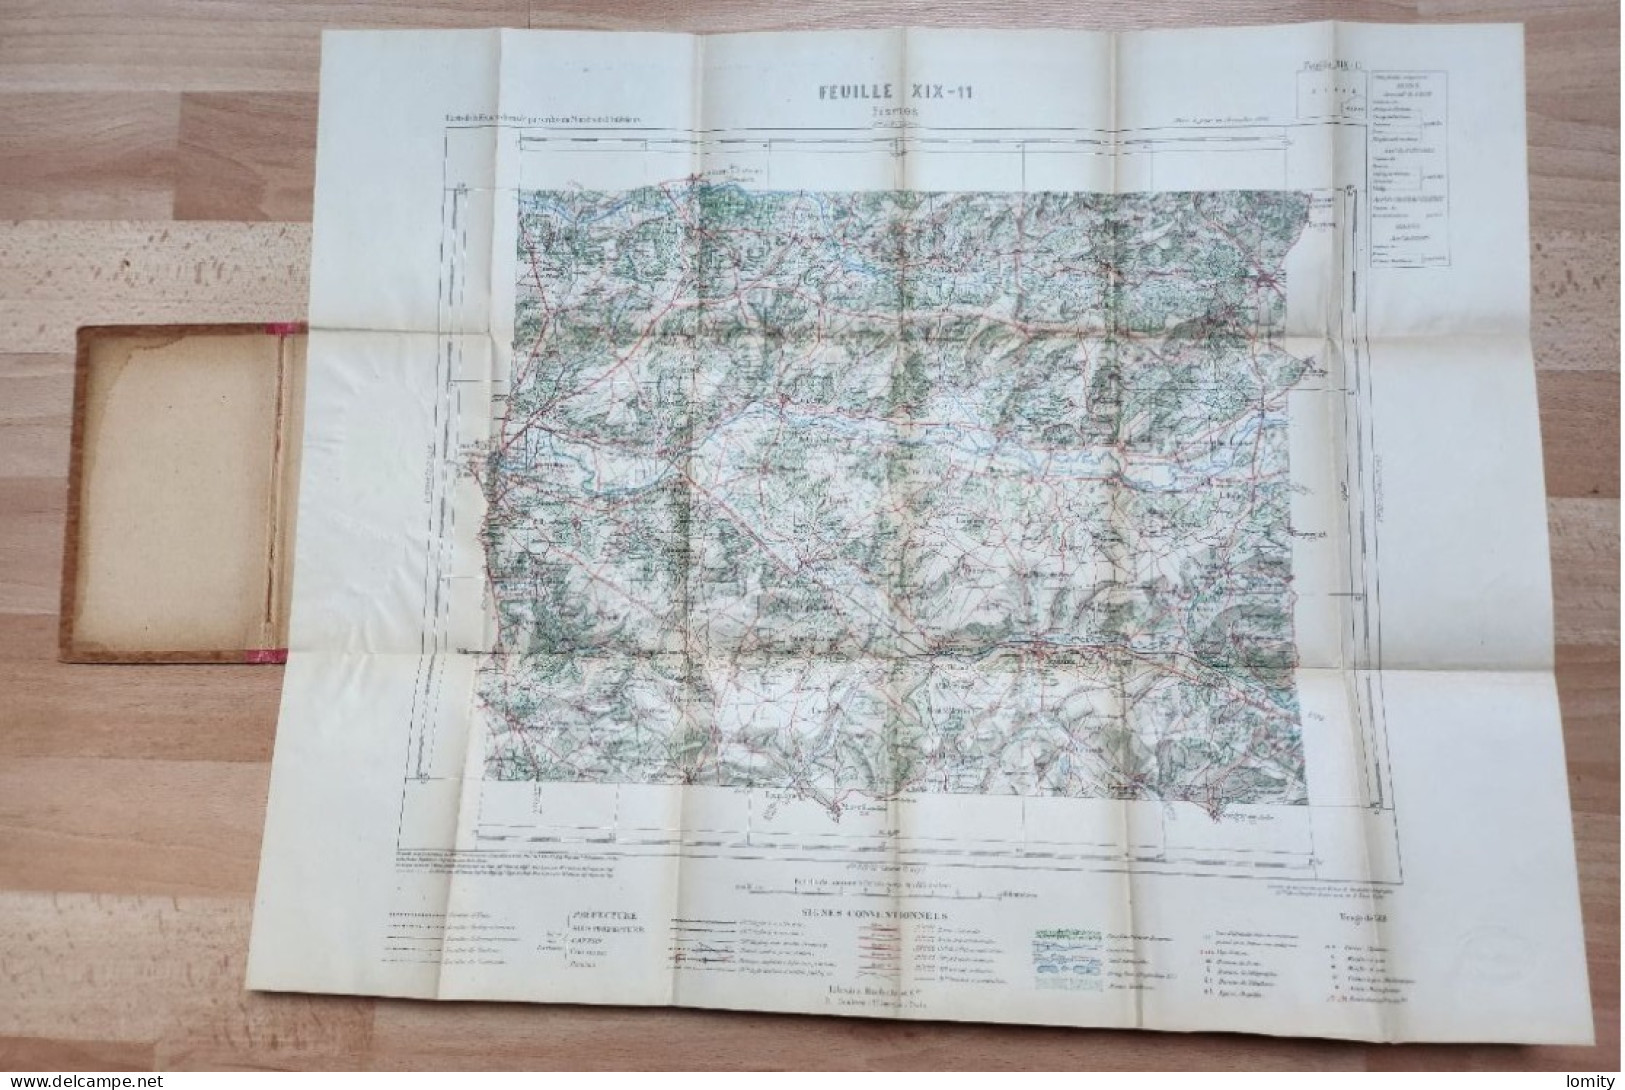 Carte D' Etat Major Ministère De L' Intérieur Fismes Librairie Hachette Mise à Jour 1906 - Topographische Karten